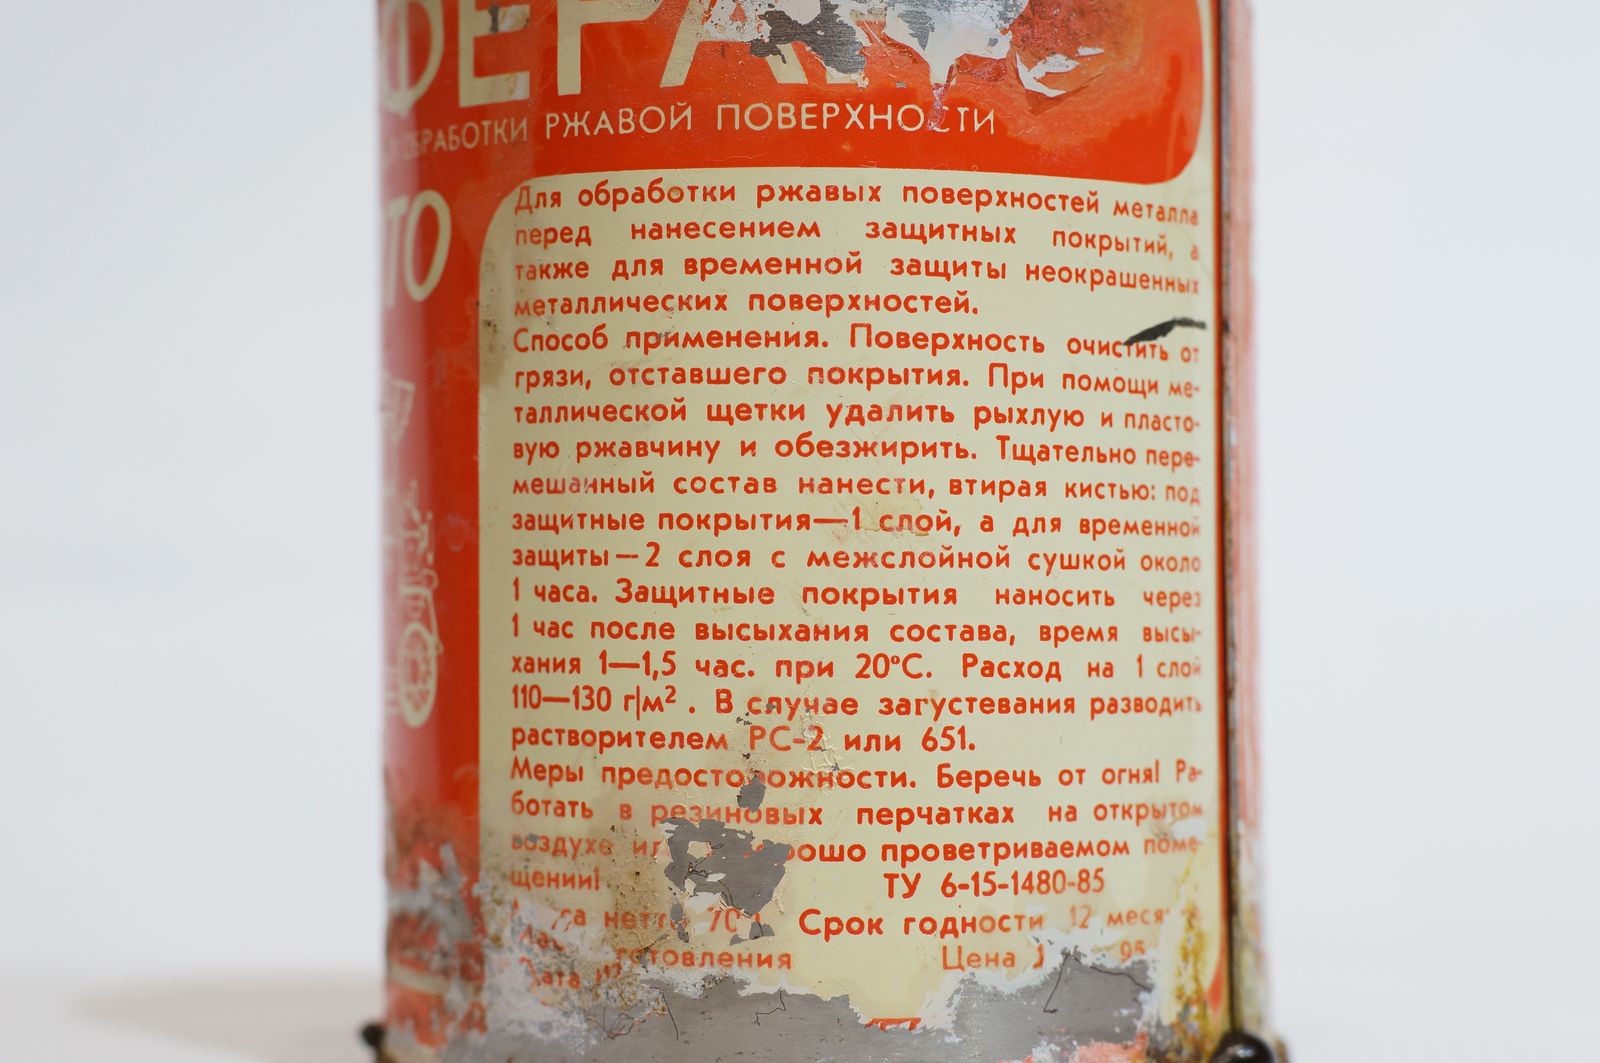 Дефицитный советский антикор «Феран»: эксперимент с автохимией из СССР, которая хранилась 32 года